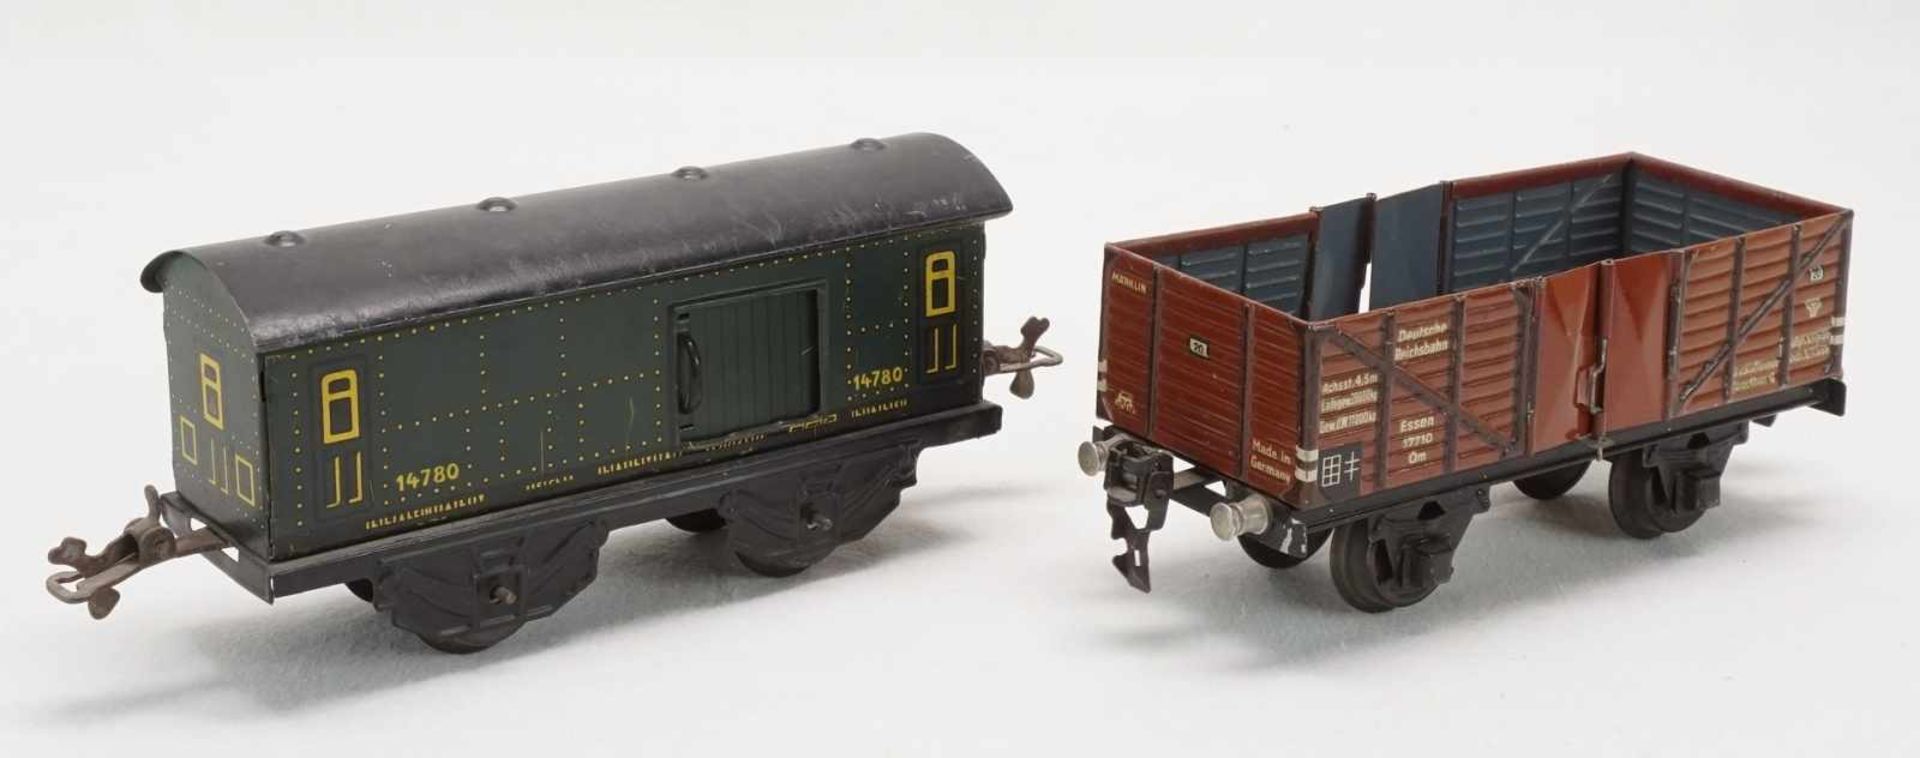 Eisenbahnanlage mit Lok und Wagen, Spur 0, um 1930Blech lithografiert, elektrische Schlepptenderlok, - Image 6 of 8